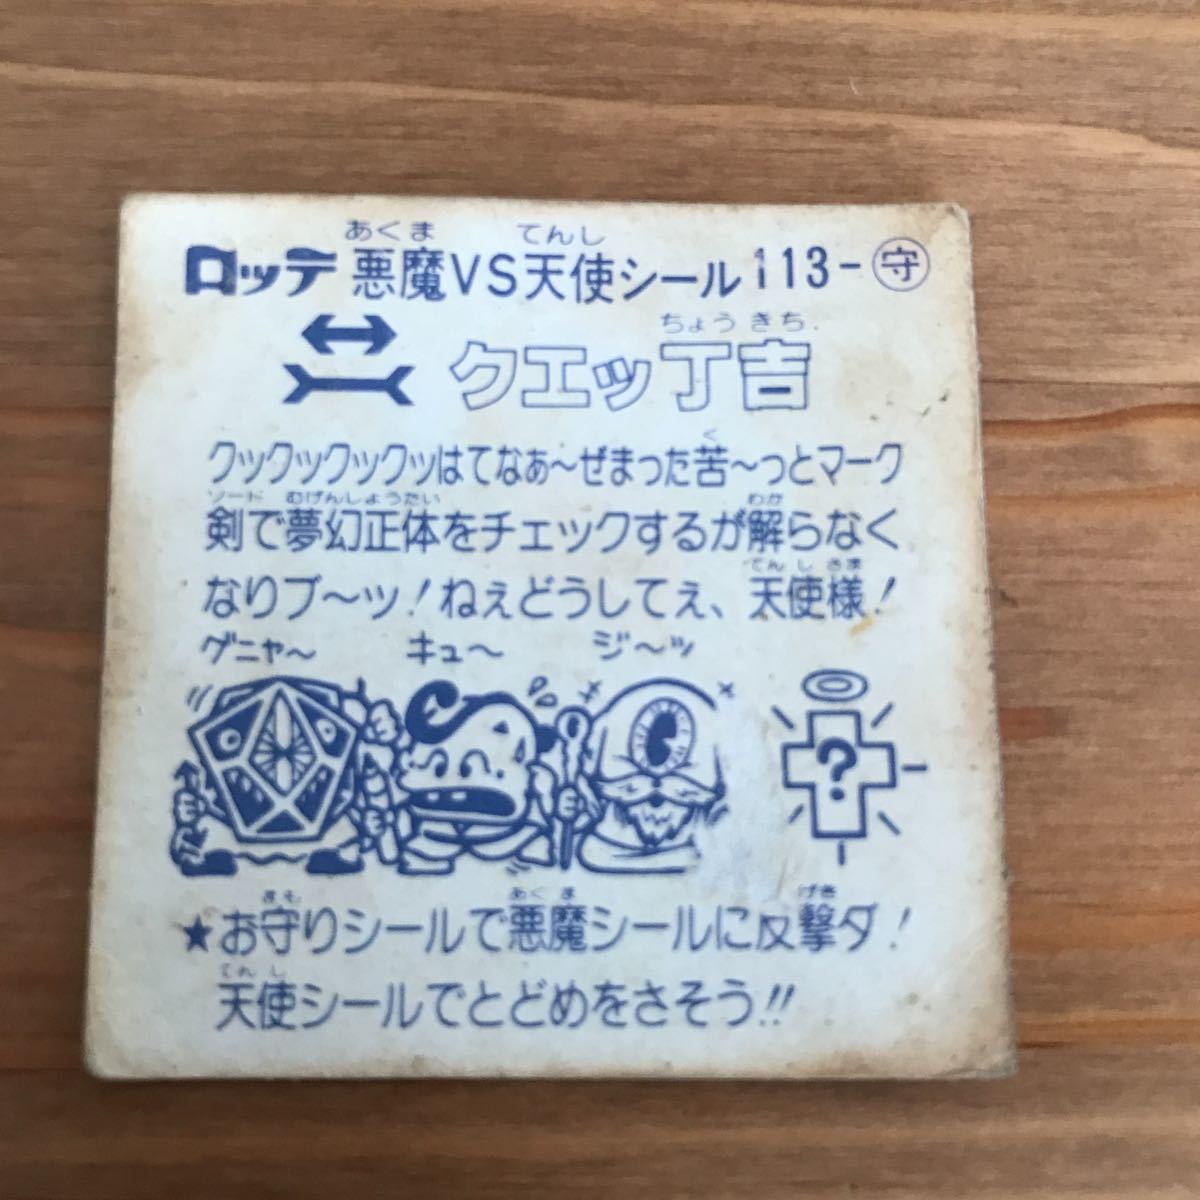  Lotte очень популярный Bikkuri man Project Kirakira редкий предмет наклейка карта амулет ke шт . малый наклейка 